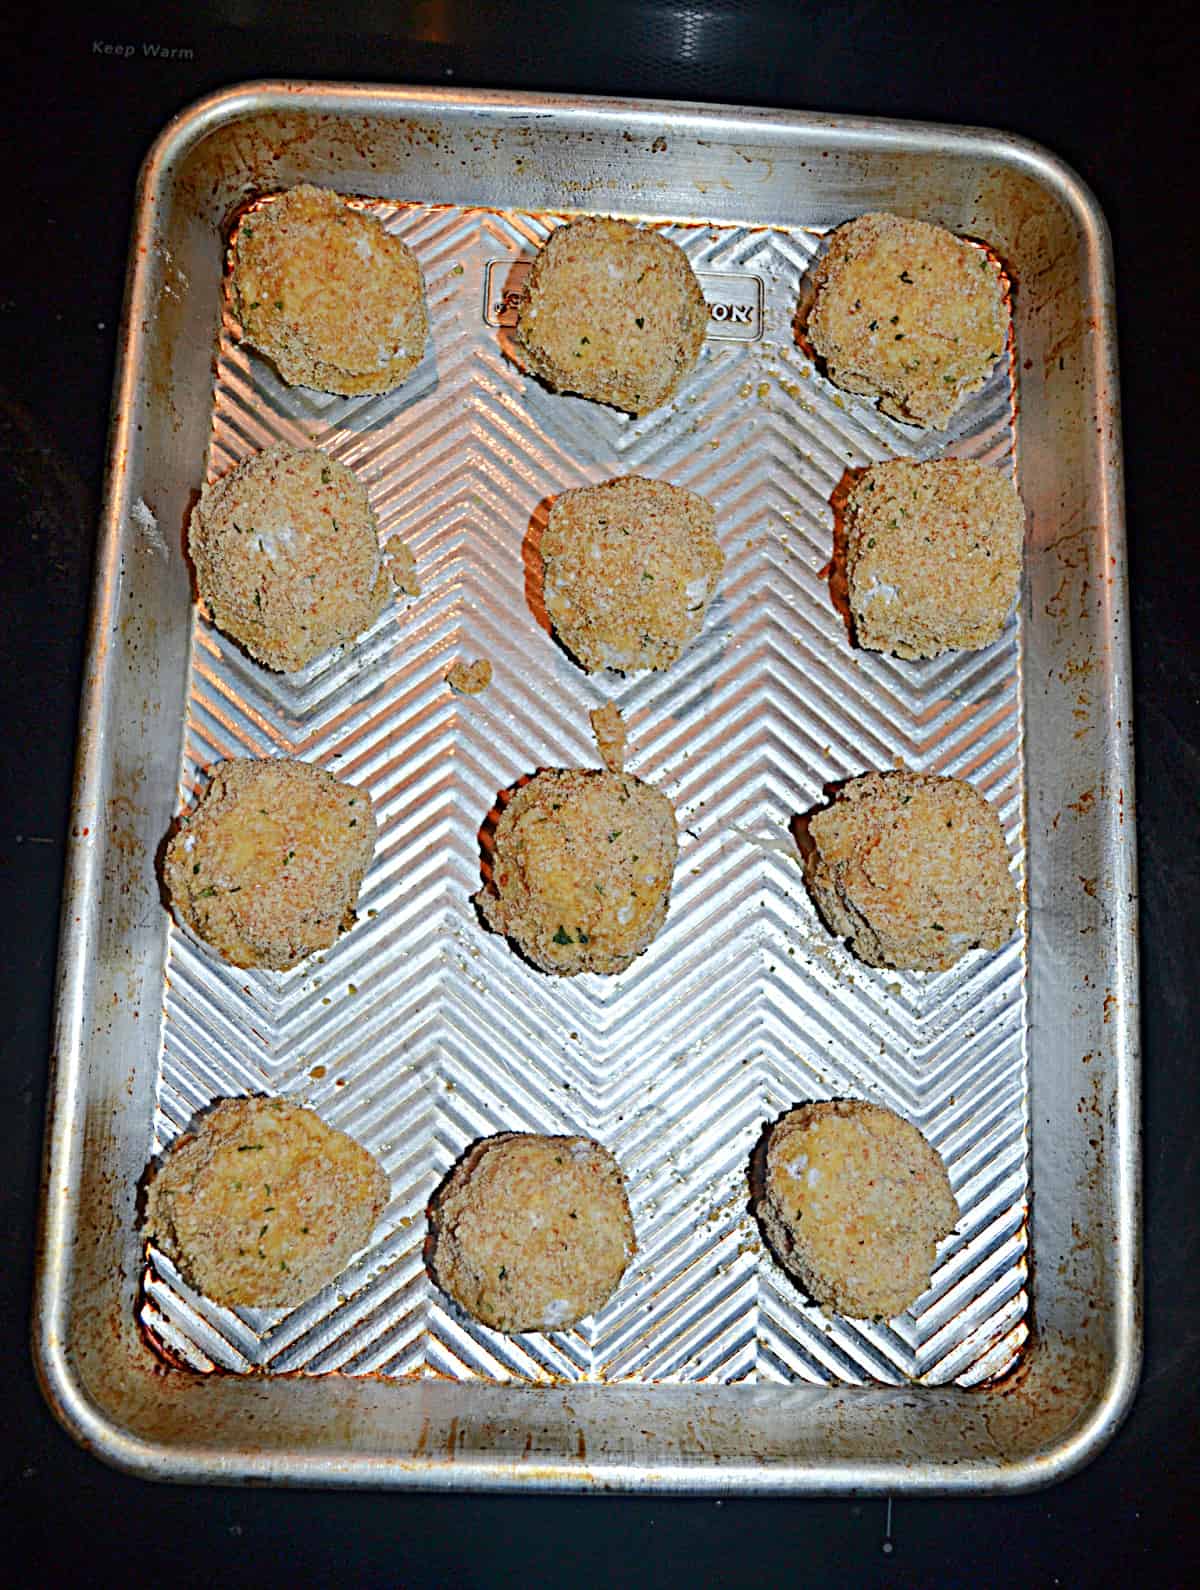 A baking sheet with sauerkraut balls on it.